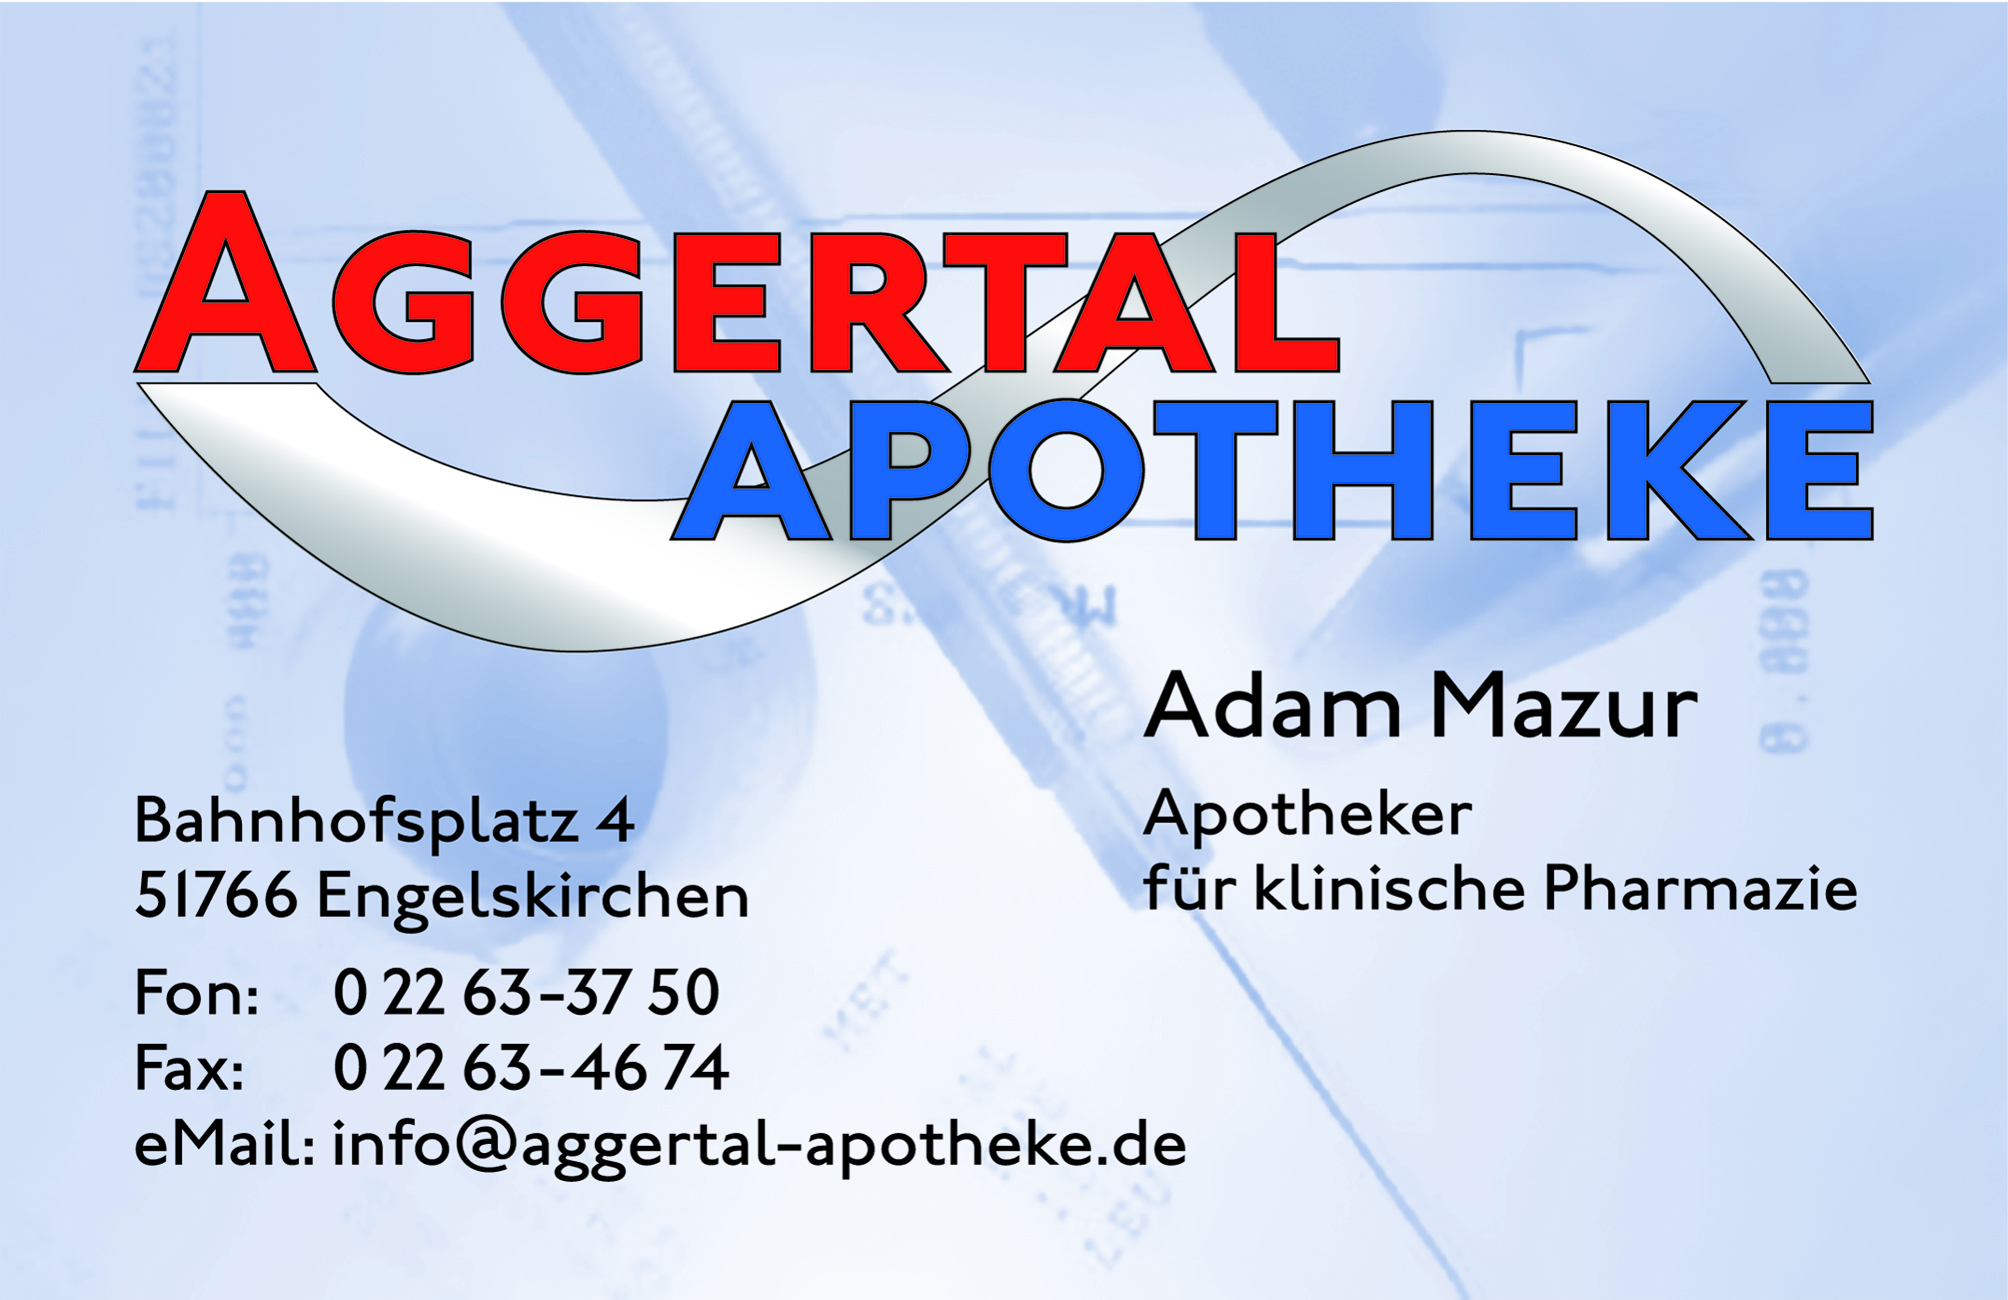 Aggertal Apotheke Logo